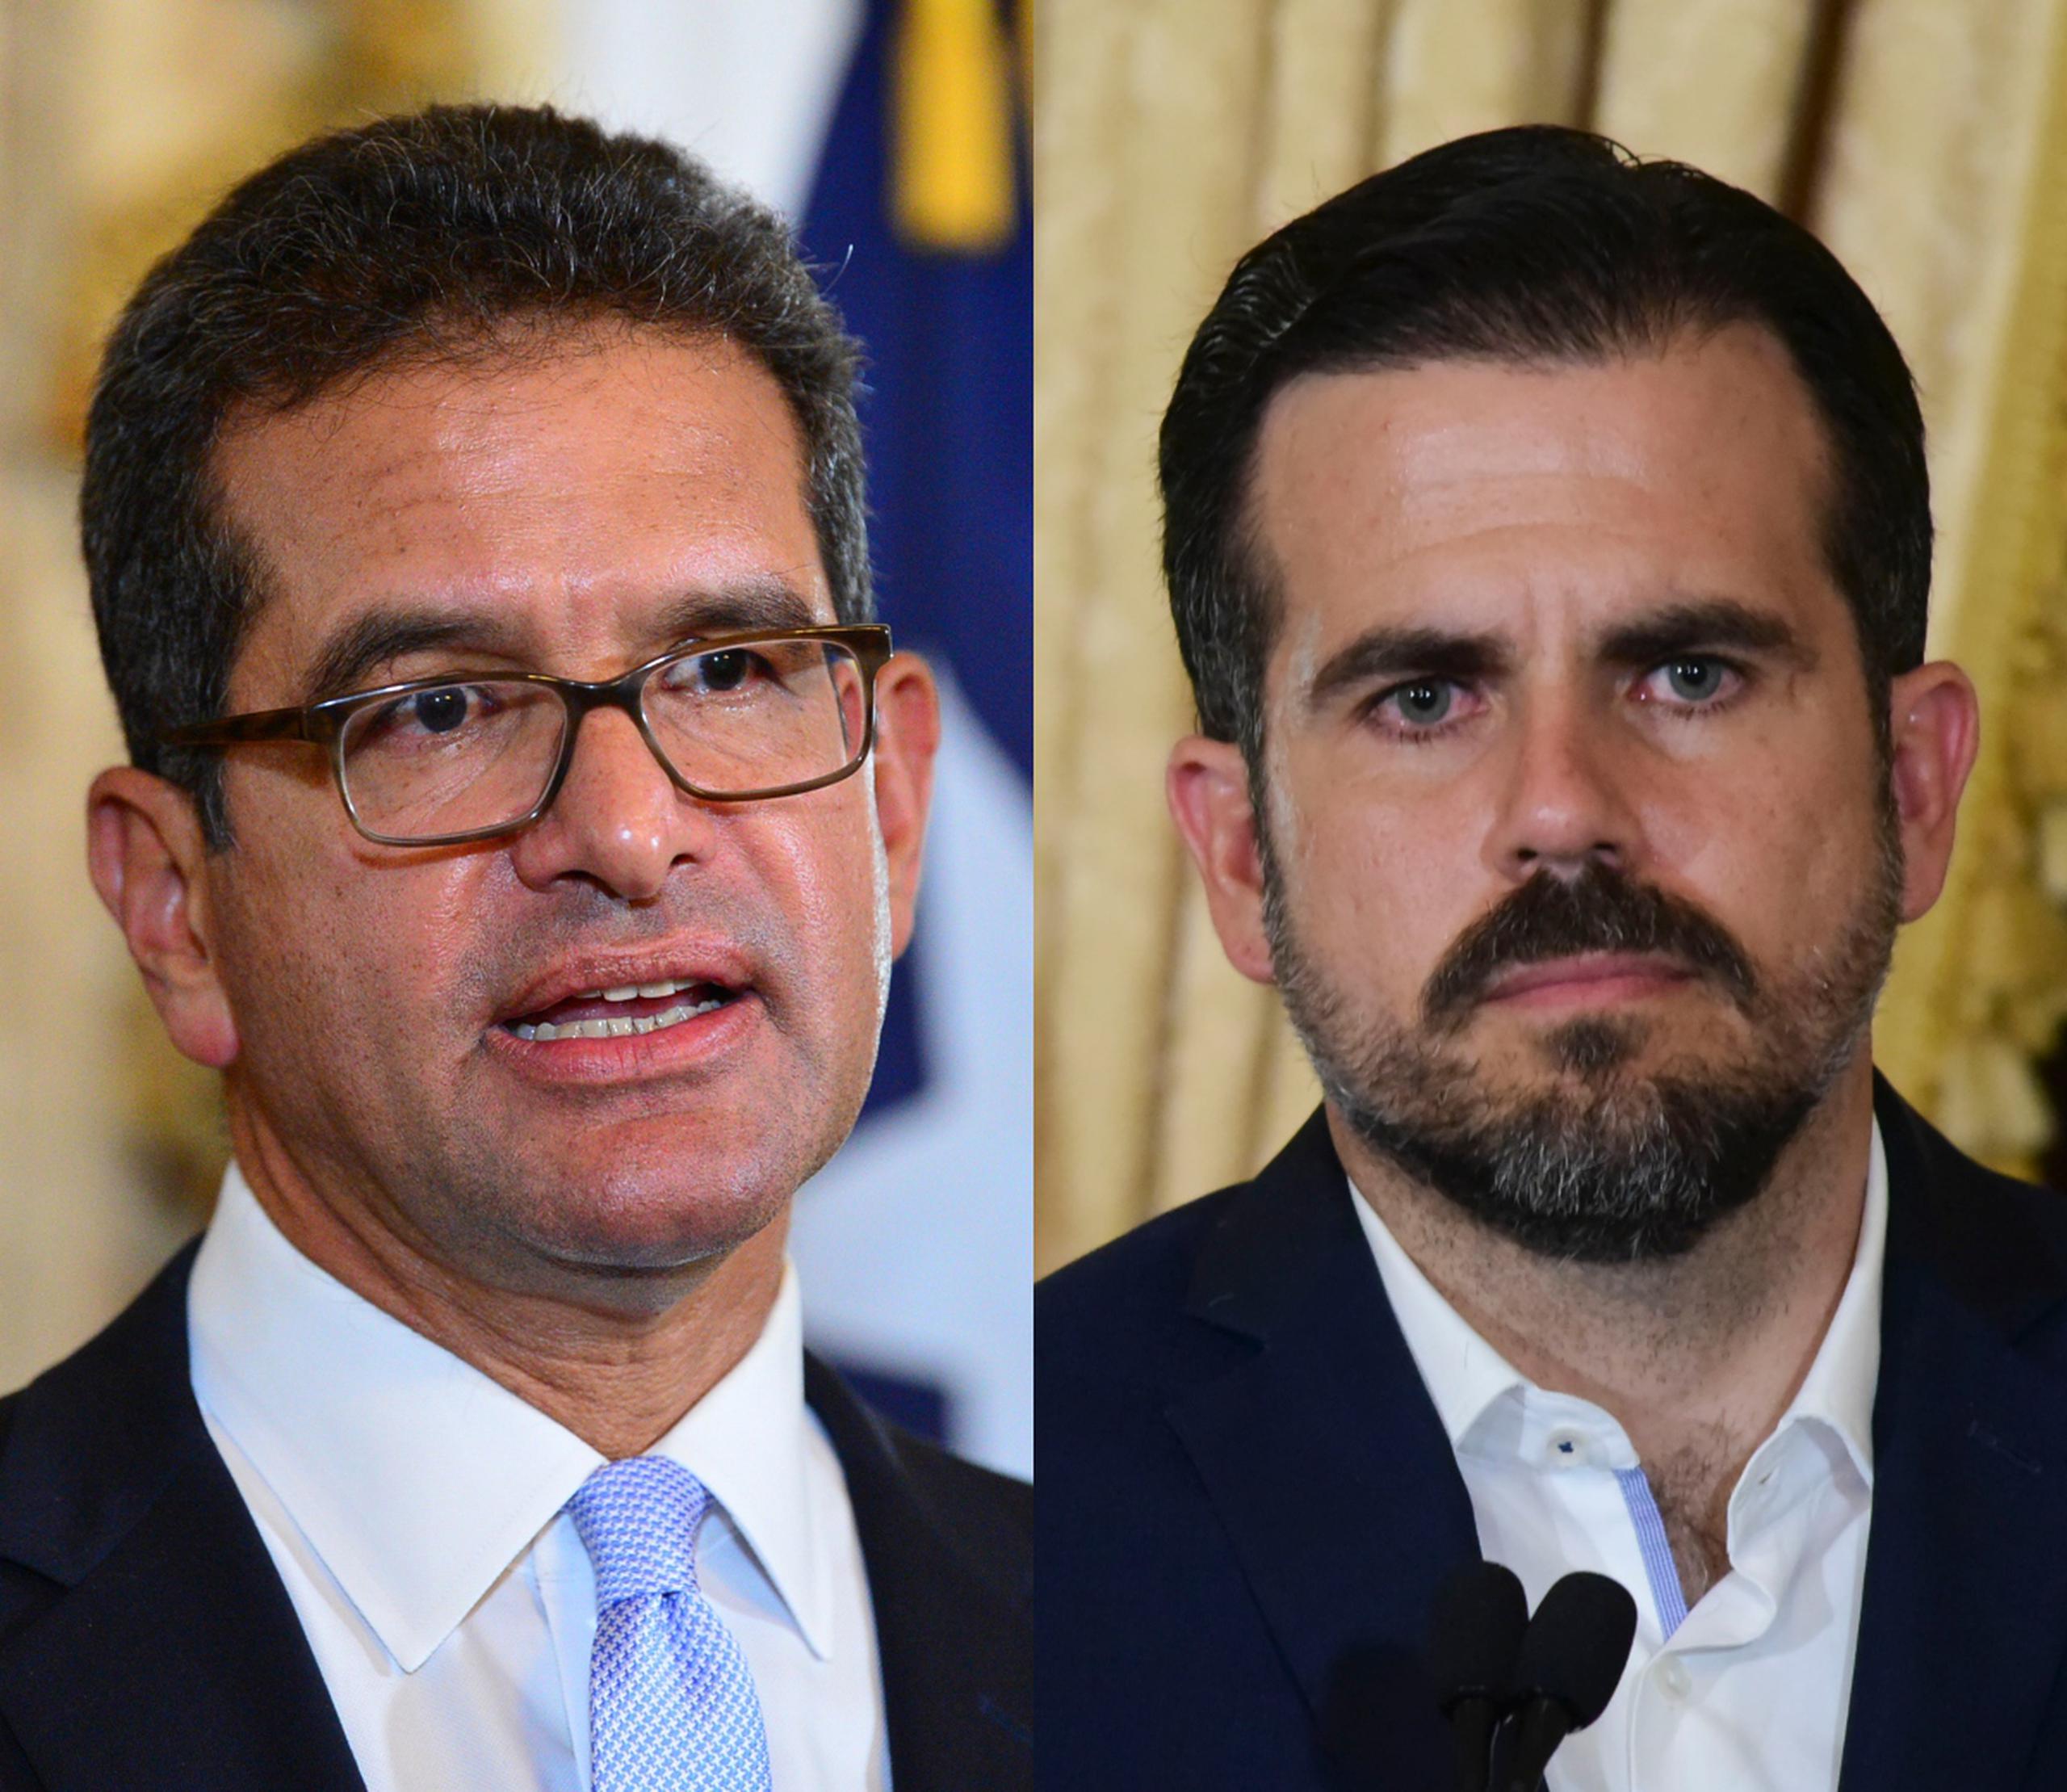 El mandatario aseguró que una papeleta compartida con el exgobernador Ricardo Rosselló, "no está ni siquiera bajo consideración".